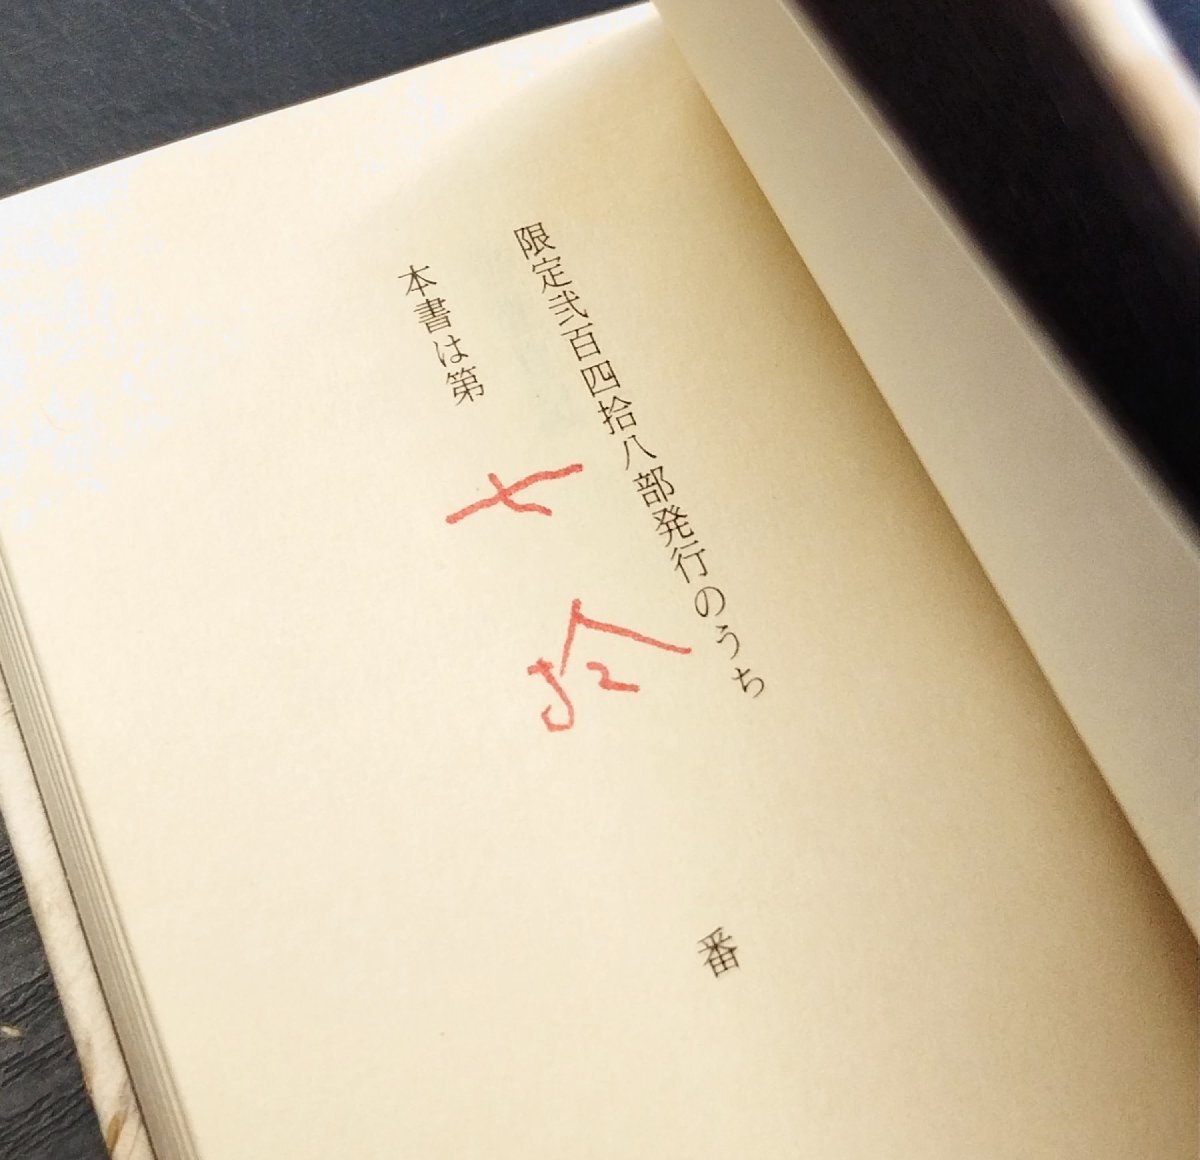  автограф подпись (. номер )*.. входить [ Ikuta Kosaku бобы книга@ love документ павильон первый шт. кабинет дневник ограничение 70/248 часть ] будущее ателье Showa 63 год 